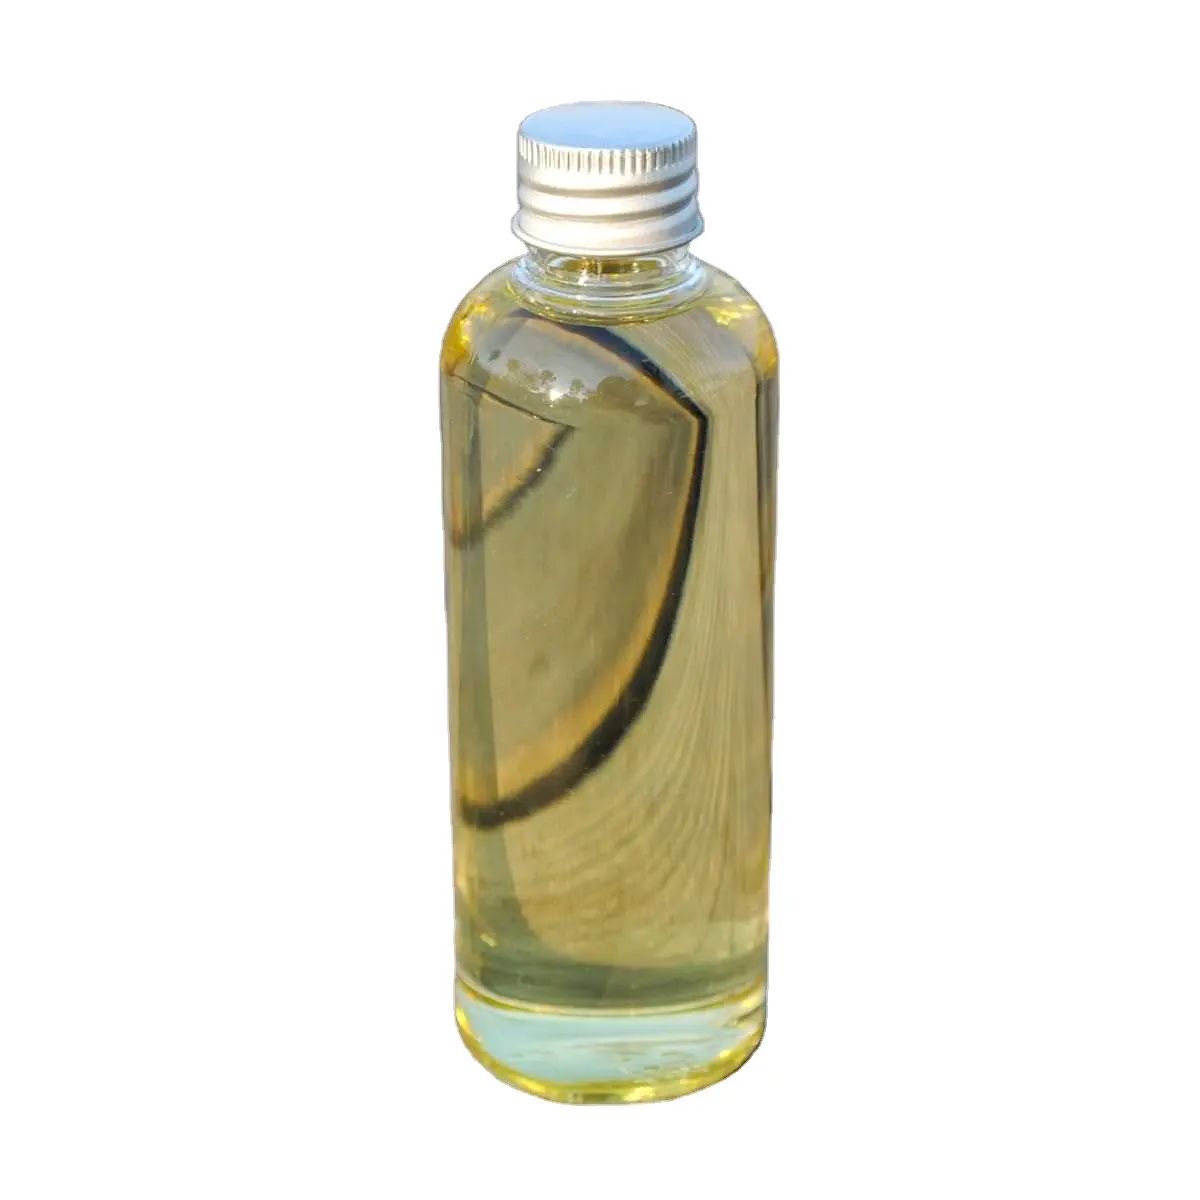 8007-46-3 тимьяновое масло, 100% натуральное тимьяновое масло по оптовым ценам для продуктов питания, косметики